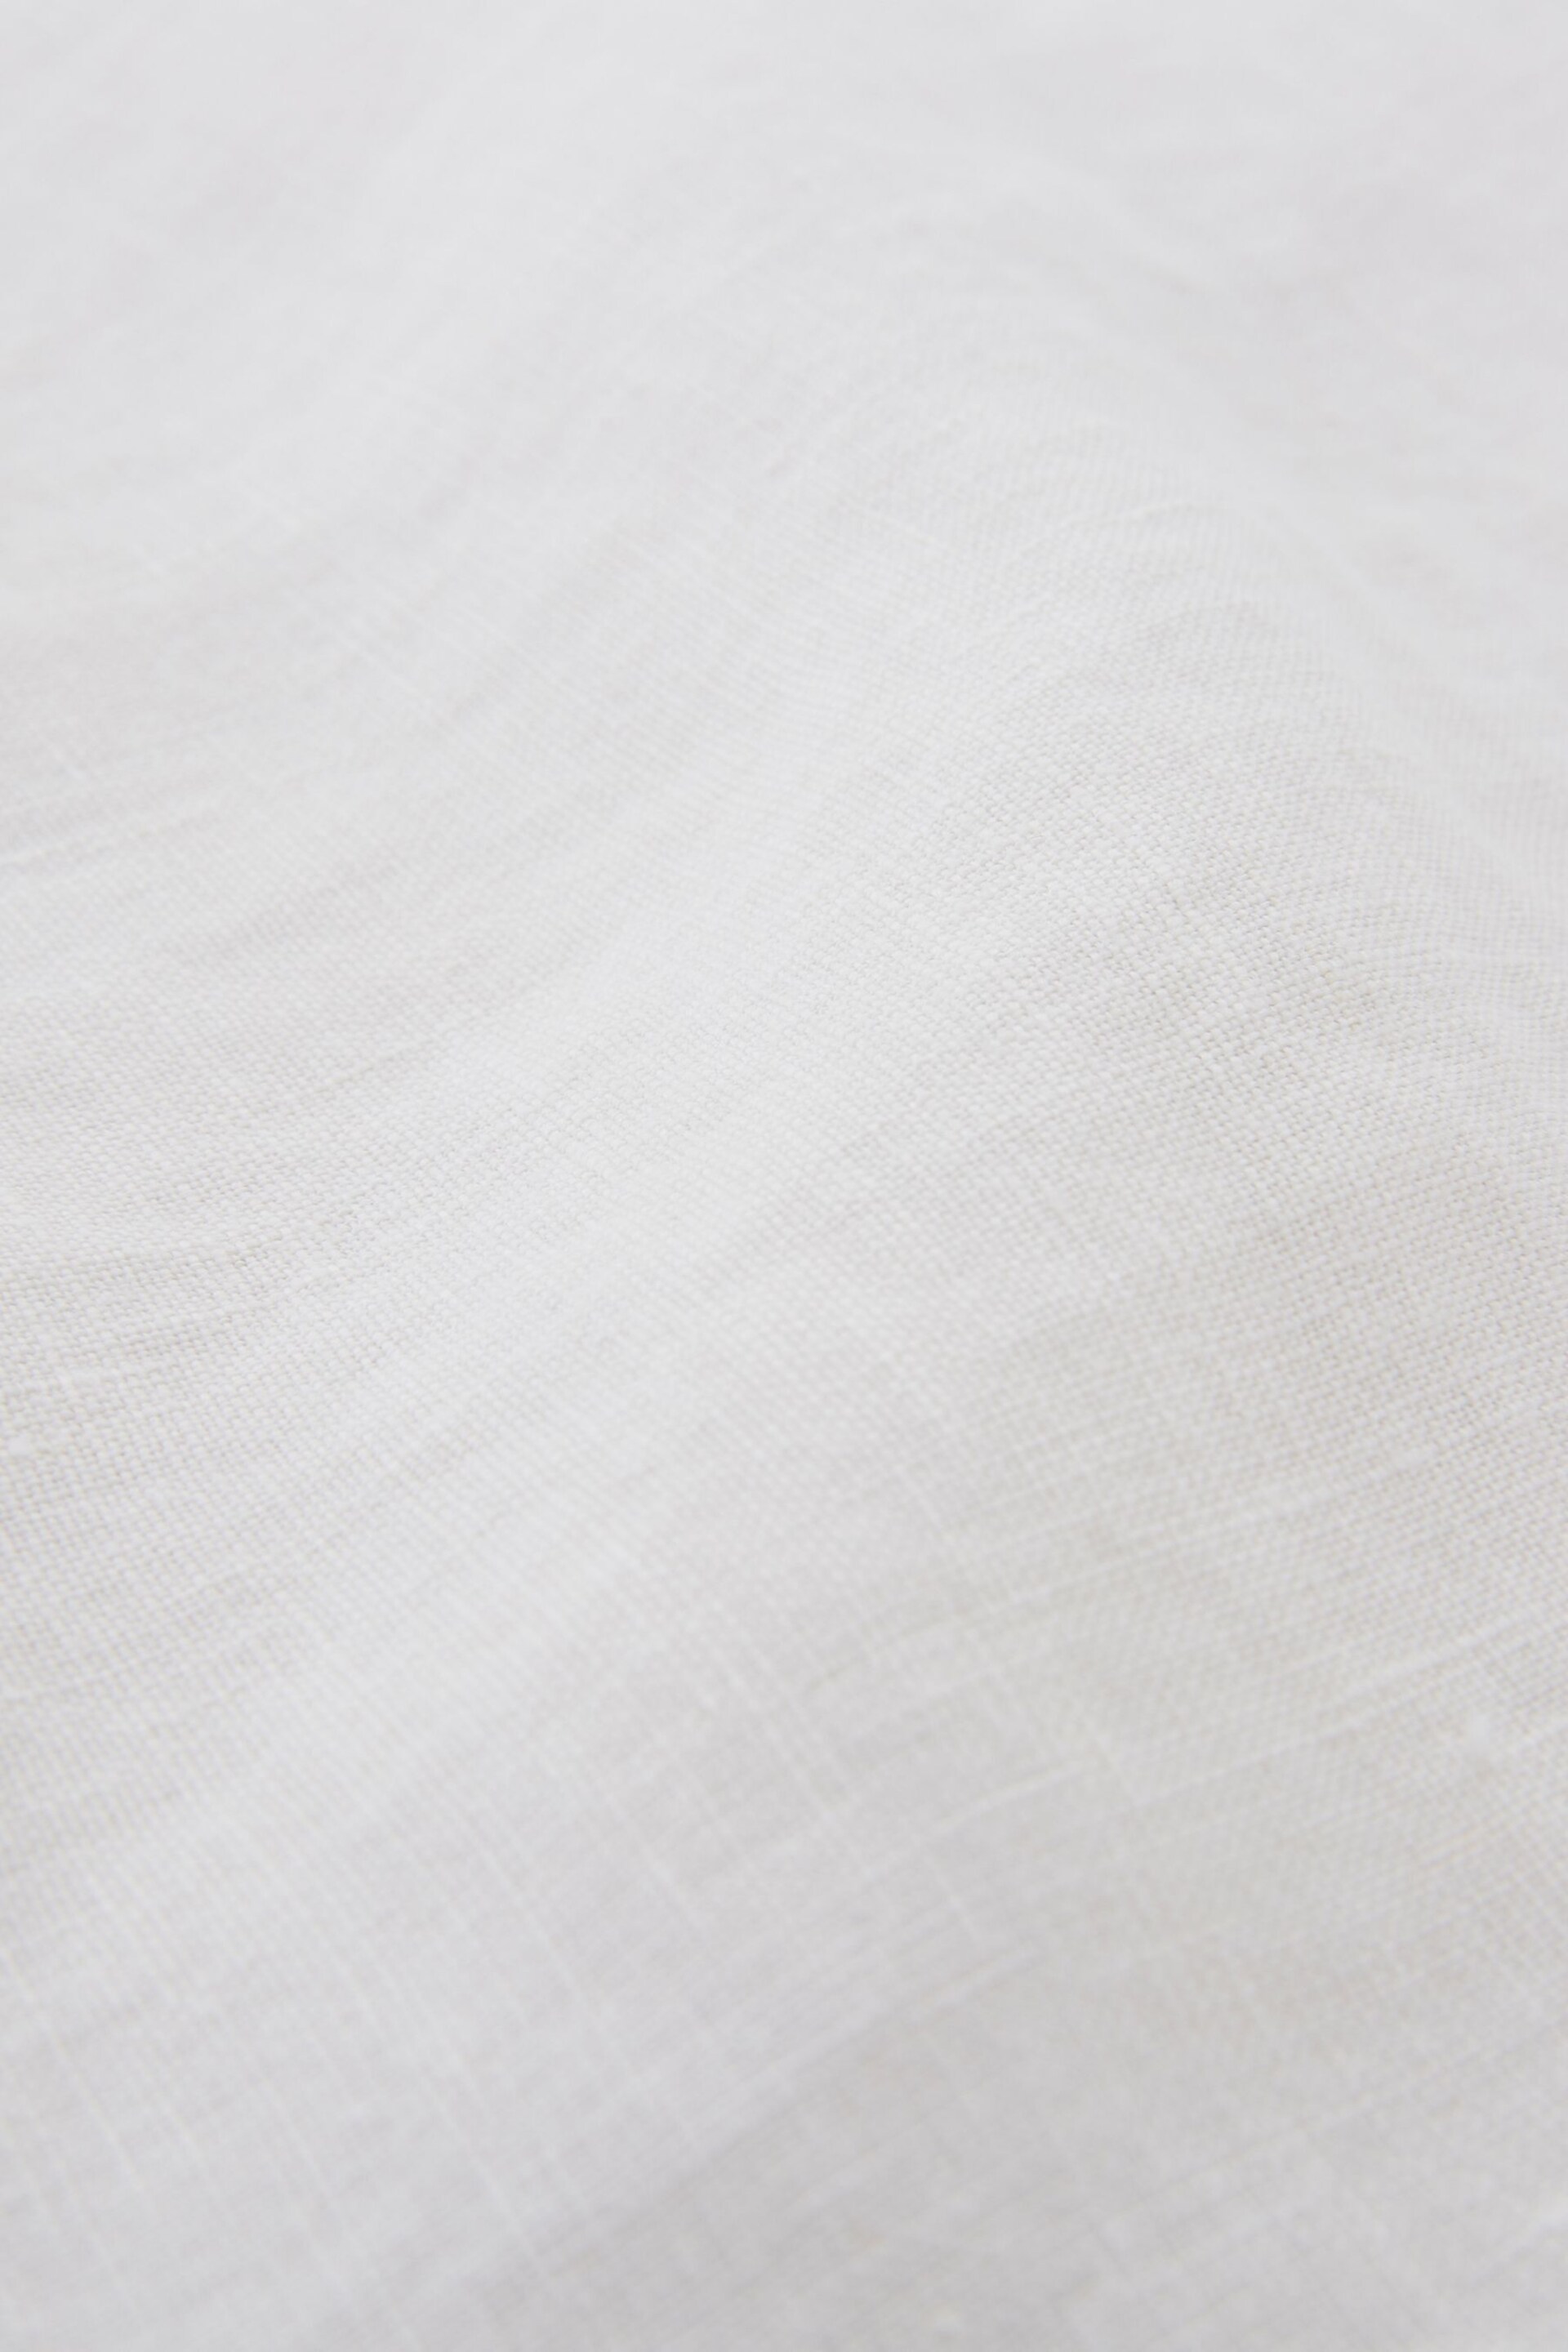 Celtic & Co. Linen White Blouses - Image 5 of 5